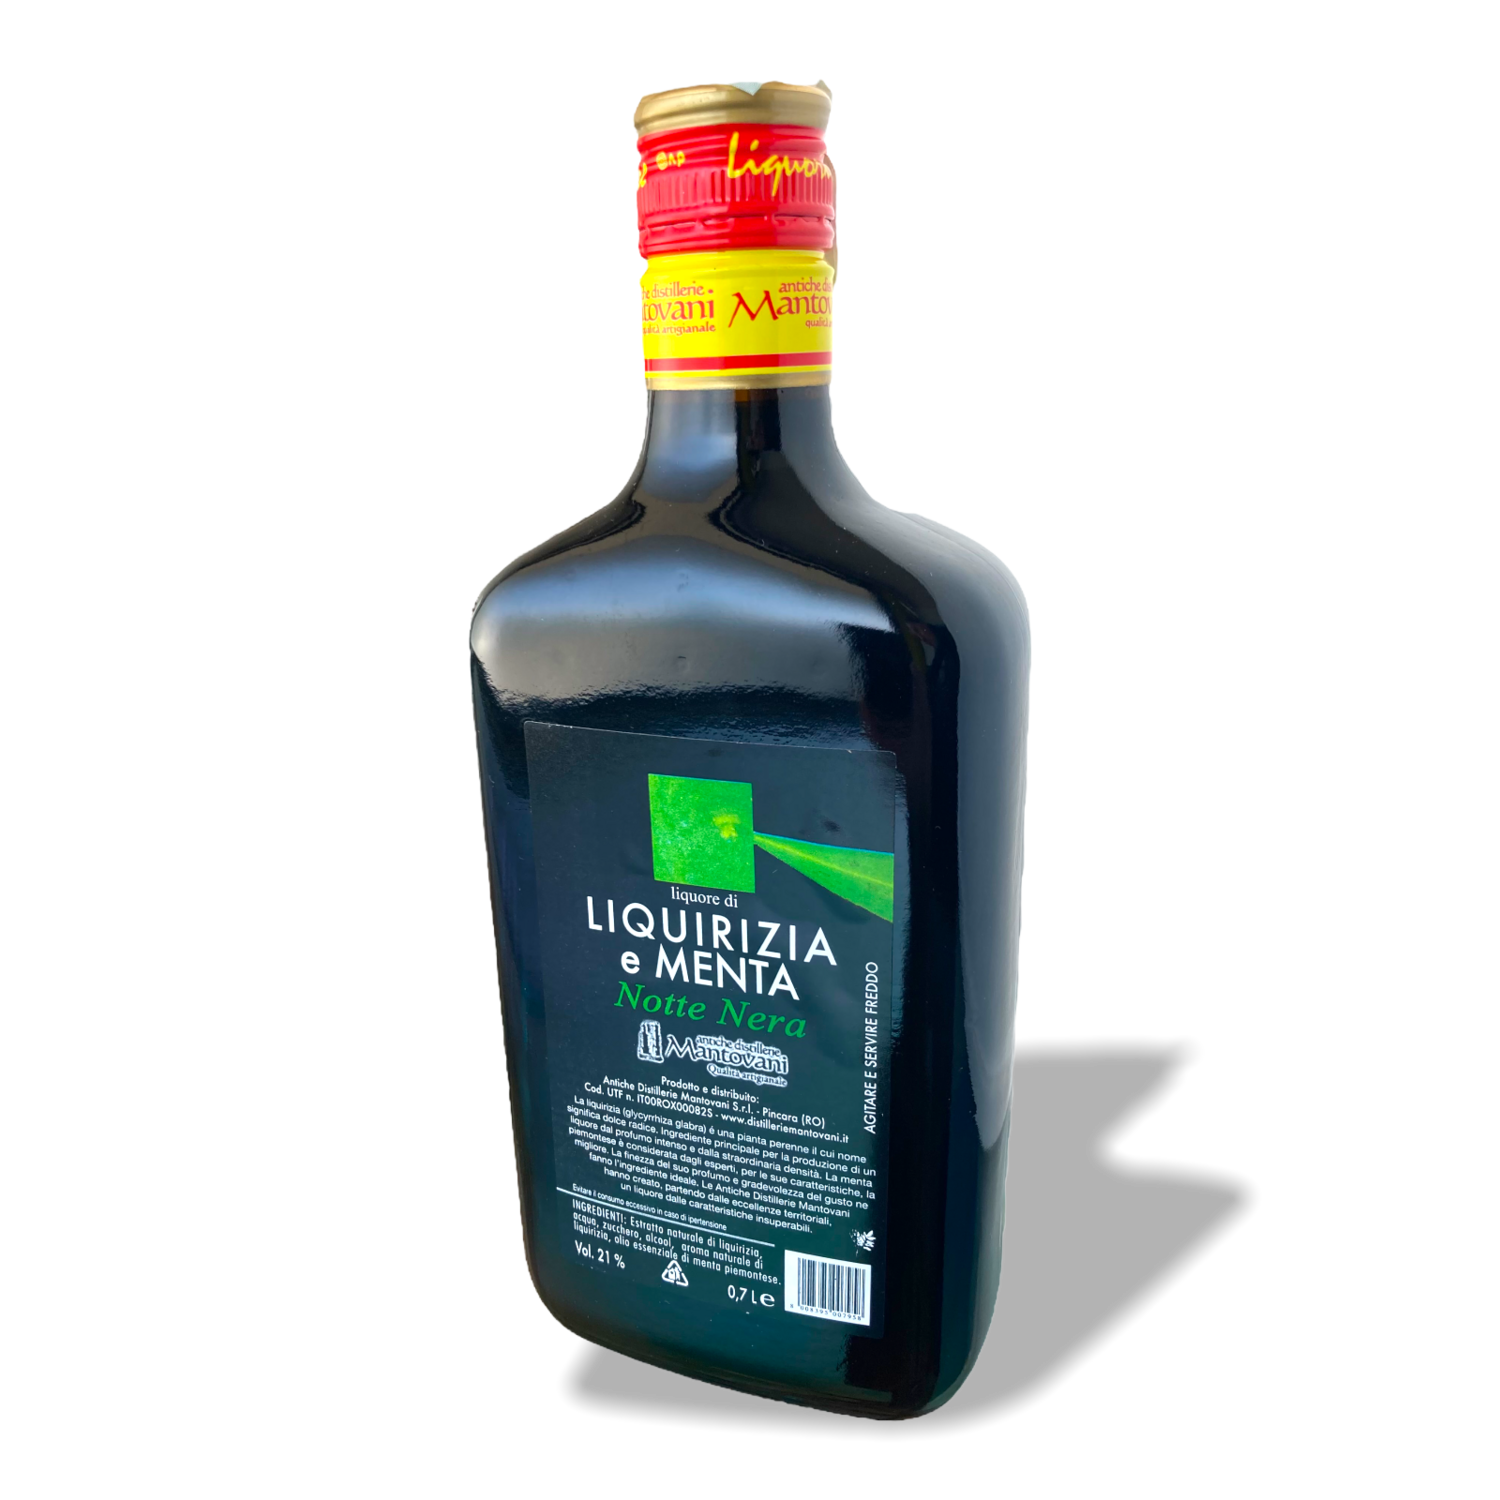 Liquore Di Liquirizia E Menta Notte Nera Antiche Distillerie Mantovani
Vol 21% 0,7 L.